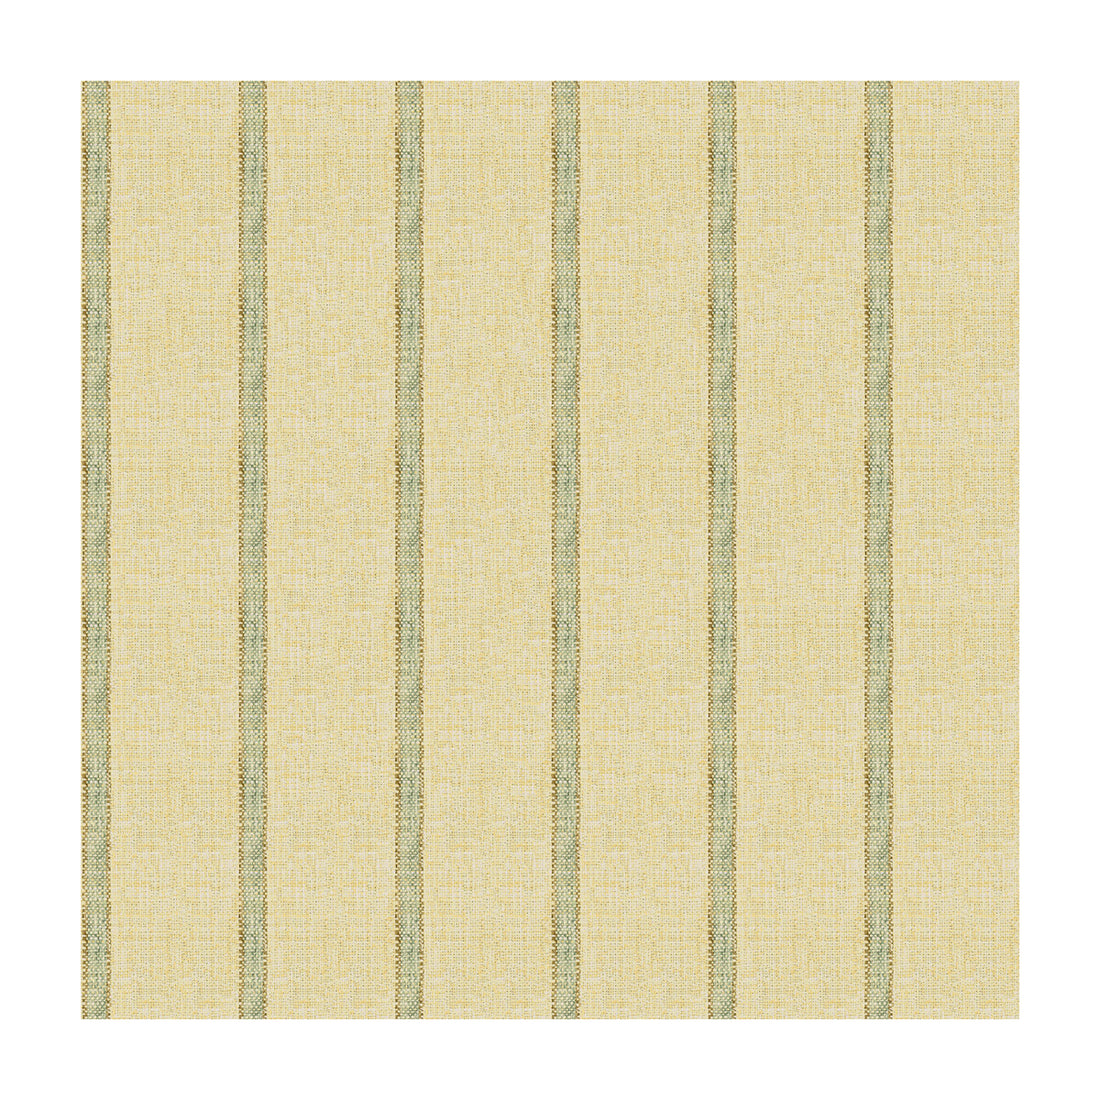 Kravet Basics fabric in 34087-1516 color - pattern 34087.1516.0 - by Kravet Basics